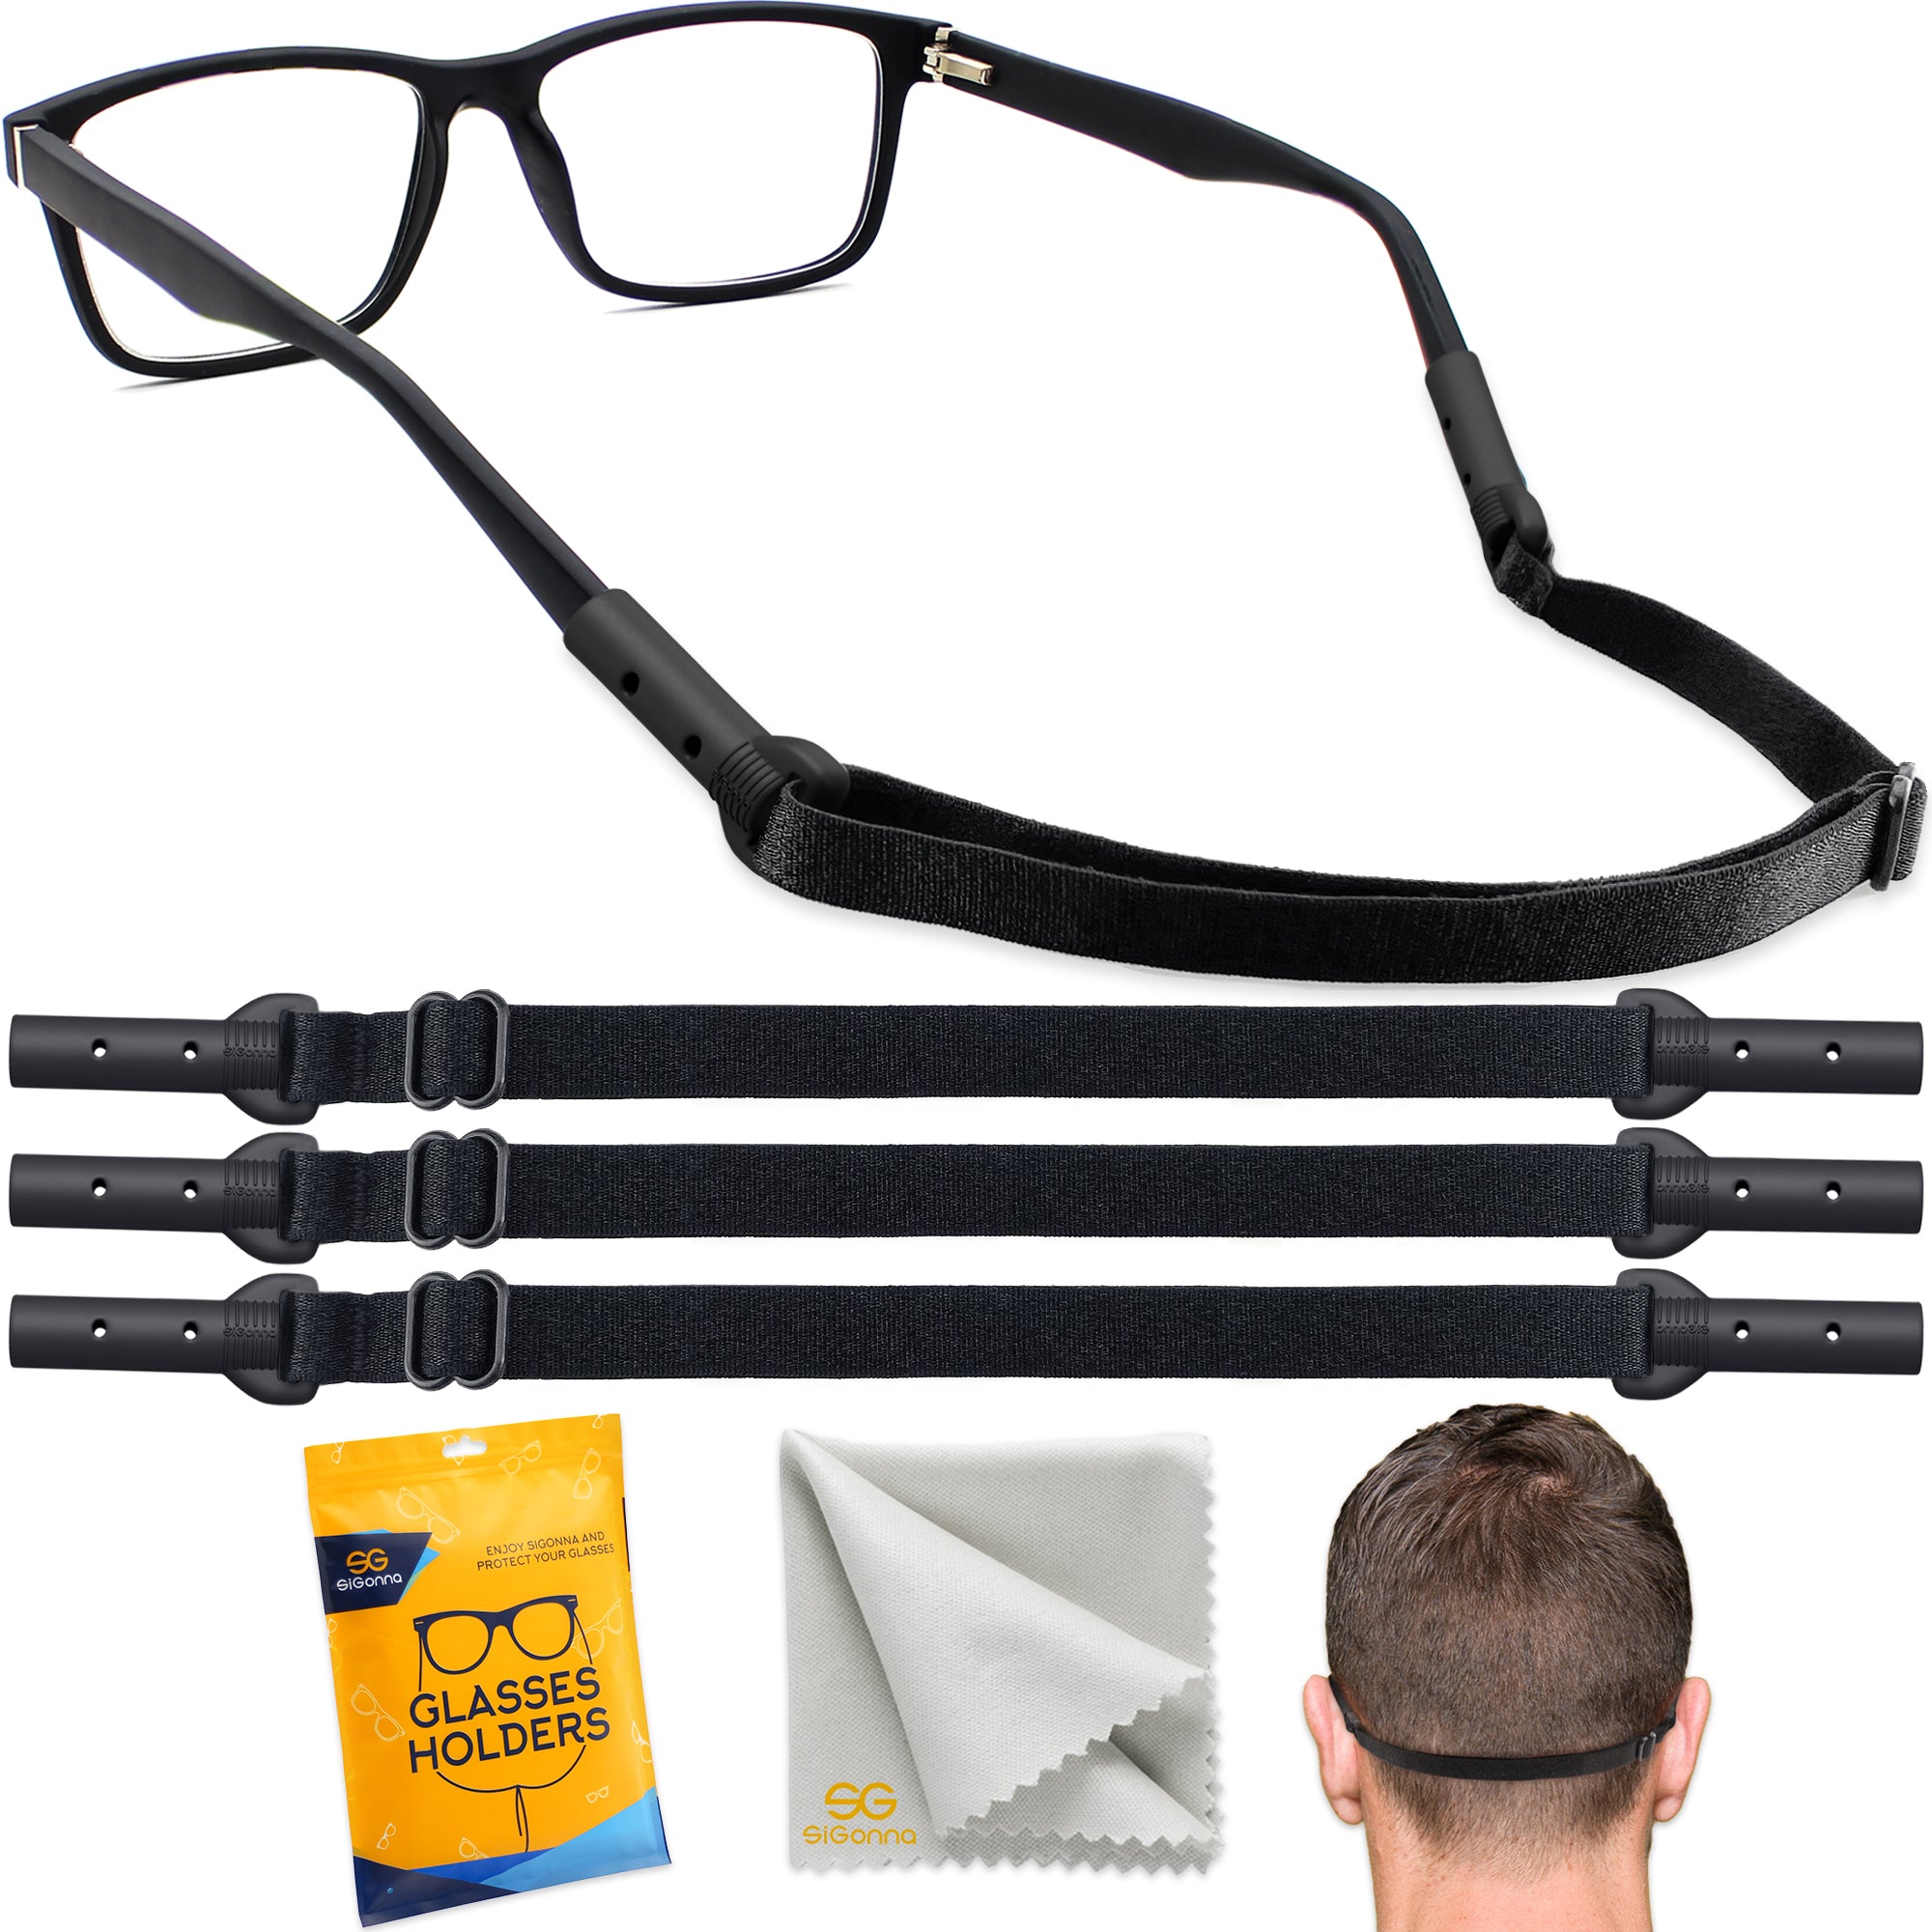 Eye glass holder Cotton 3 Eyeglasses Strap Lanyards